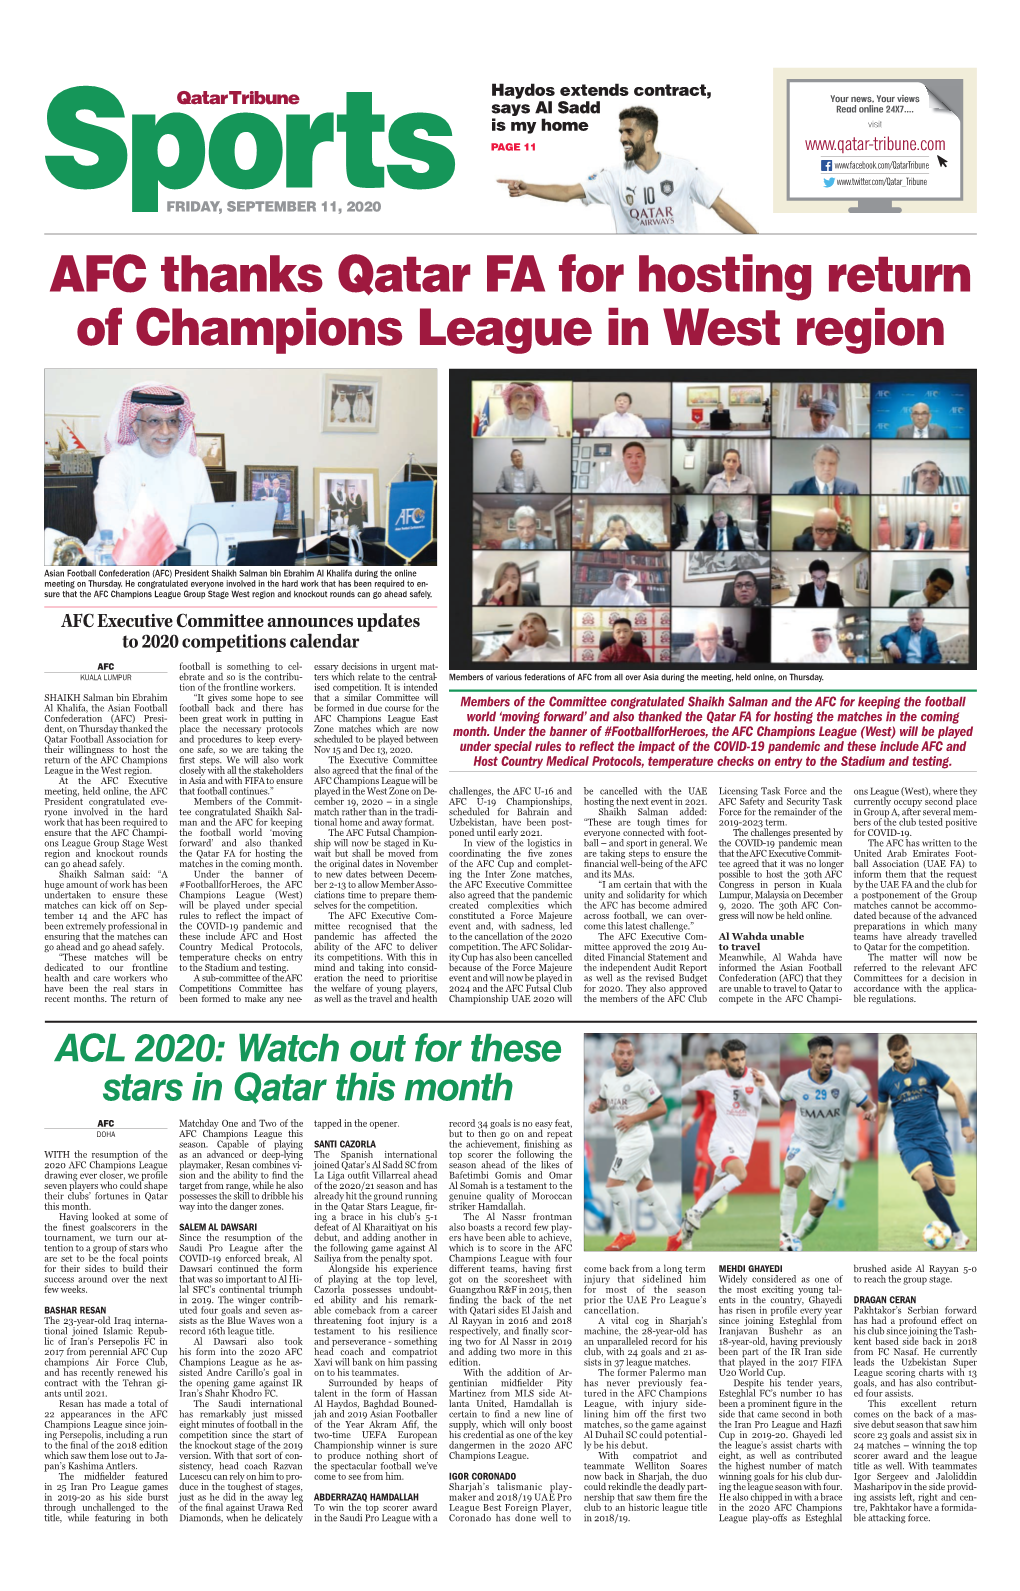 AFC Thanks Qatar FA for Hosting Return of Champions League in West Region